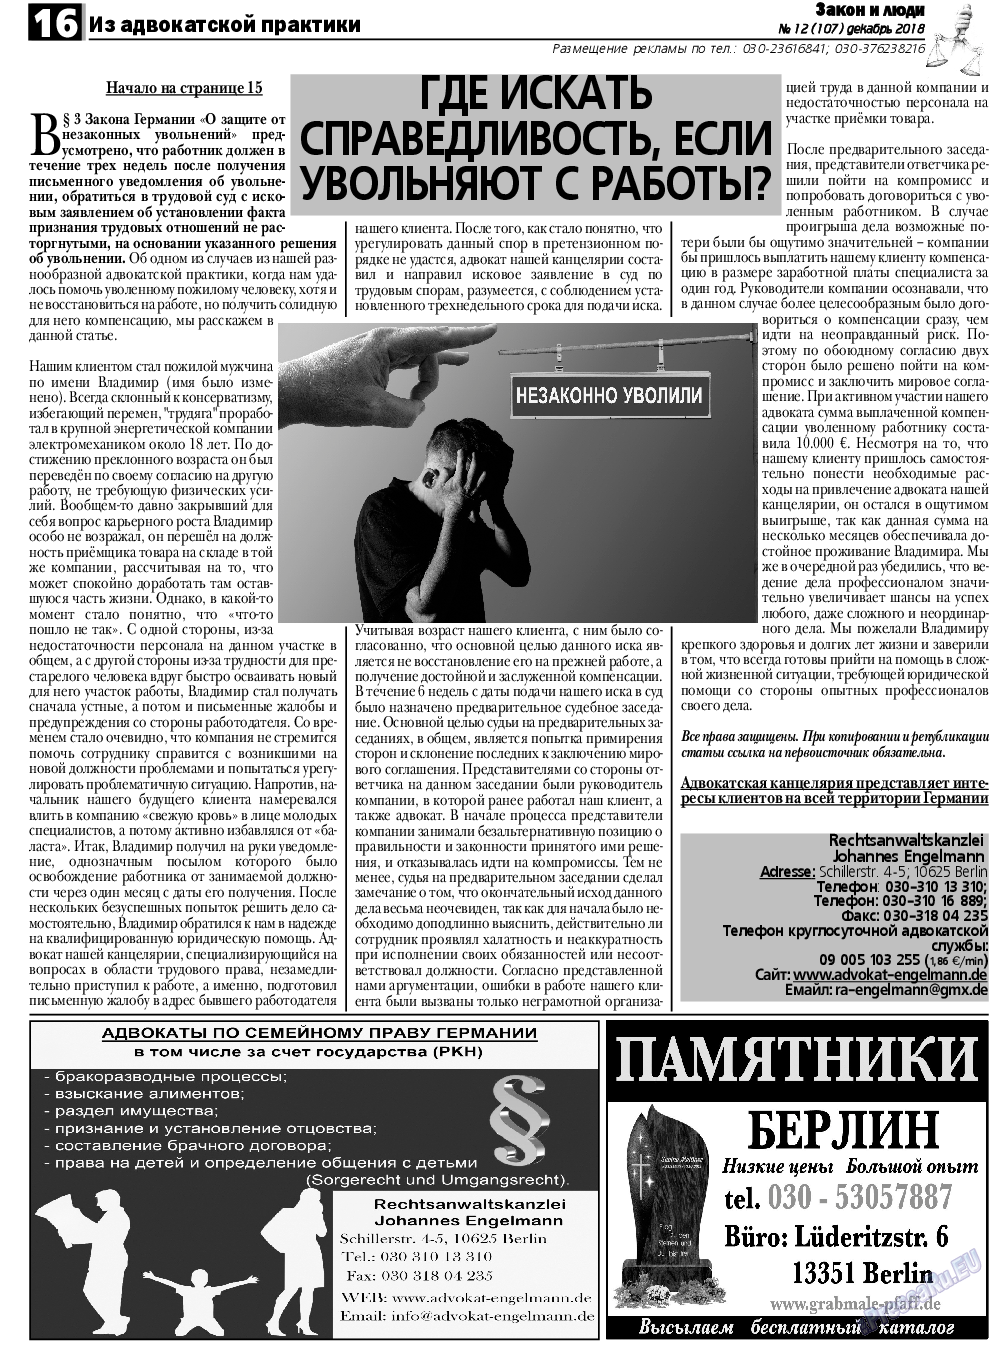 Закон и люди, газета. 2018 №12 стр.16